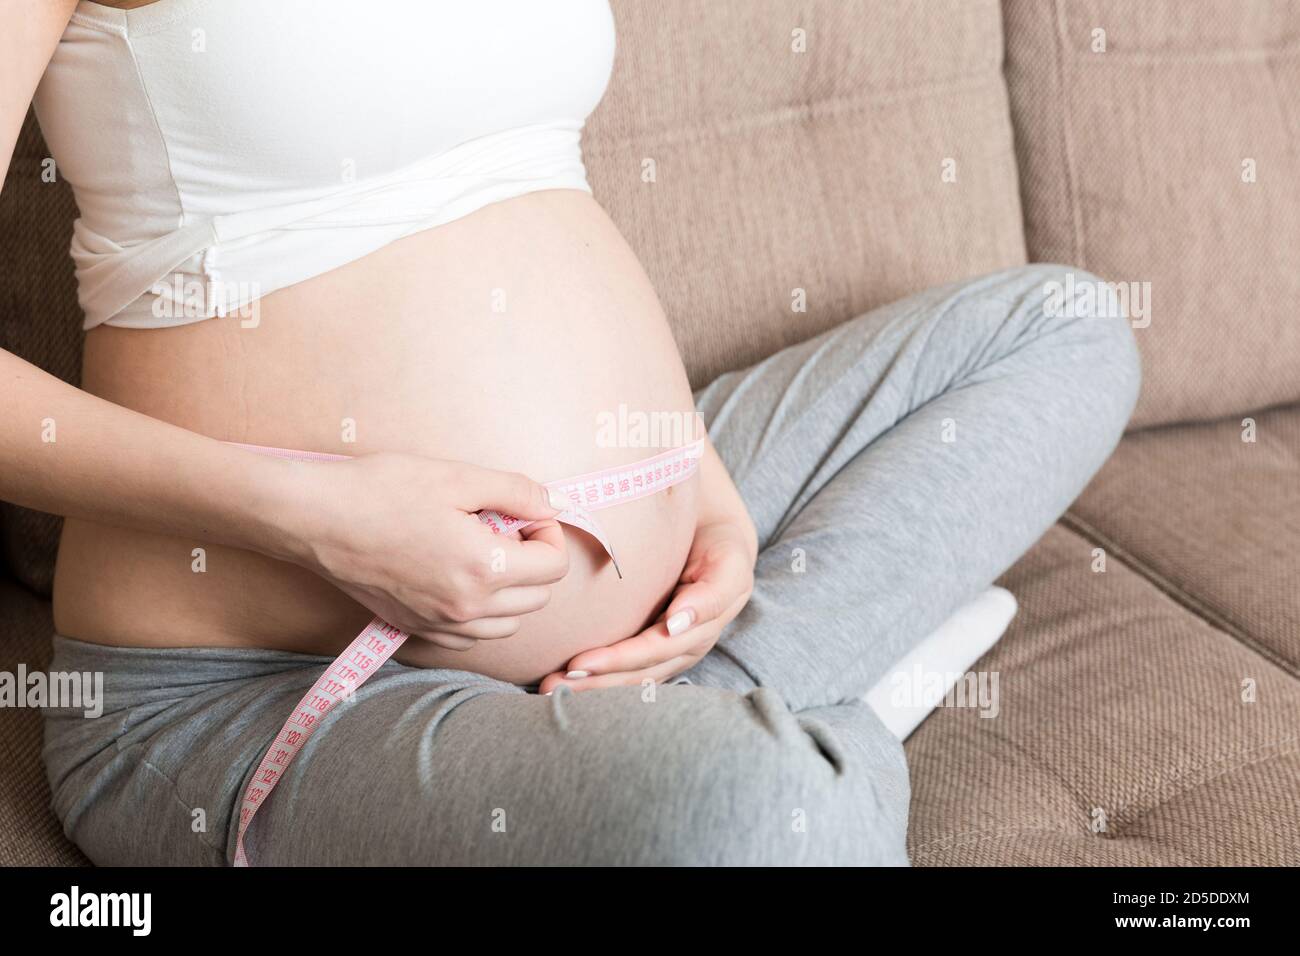 Santé bien être grossesse mode de vie. Femme enceinte mesurant son ventre.  Grossesse en santé. Santé bien être grossesse mode de vie Photo Stock -  Alamy